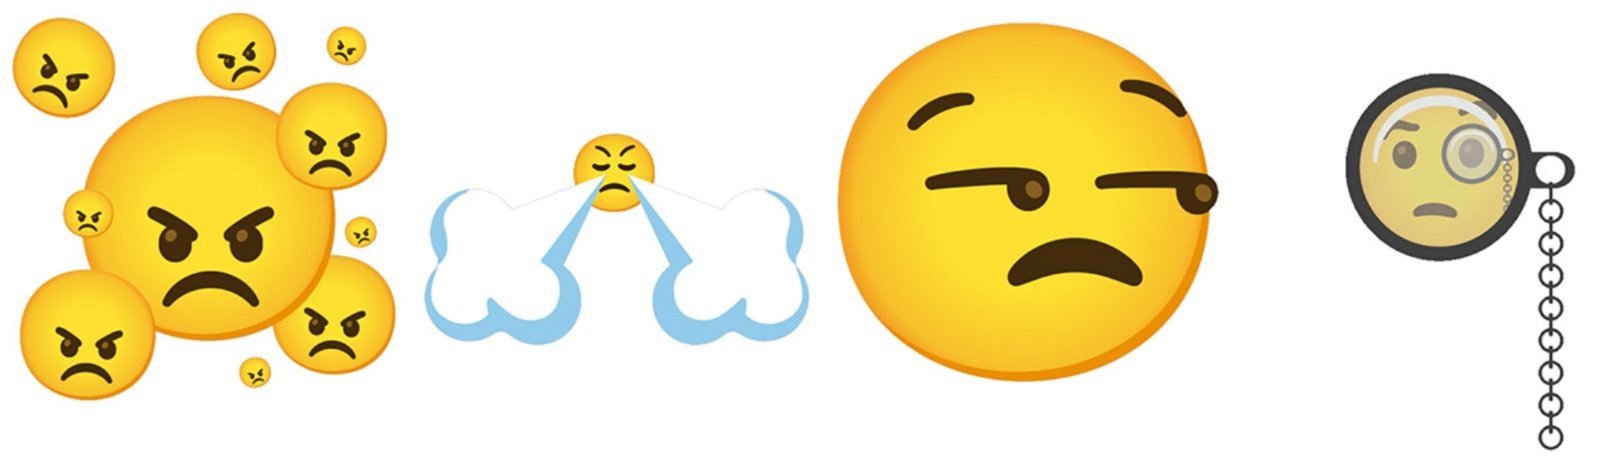 emojis combinados de Gboard 6